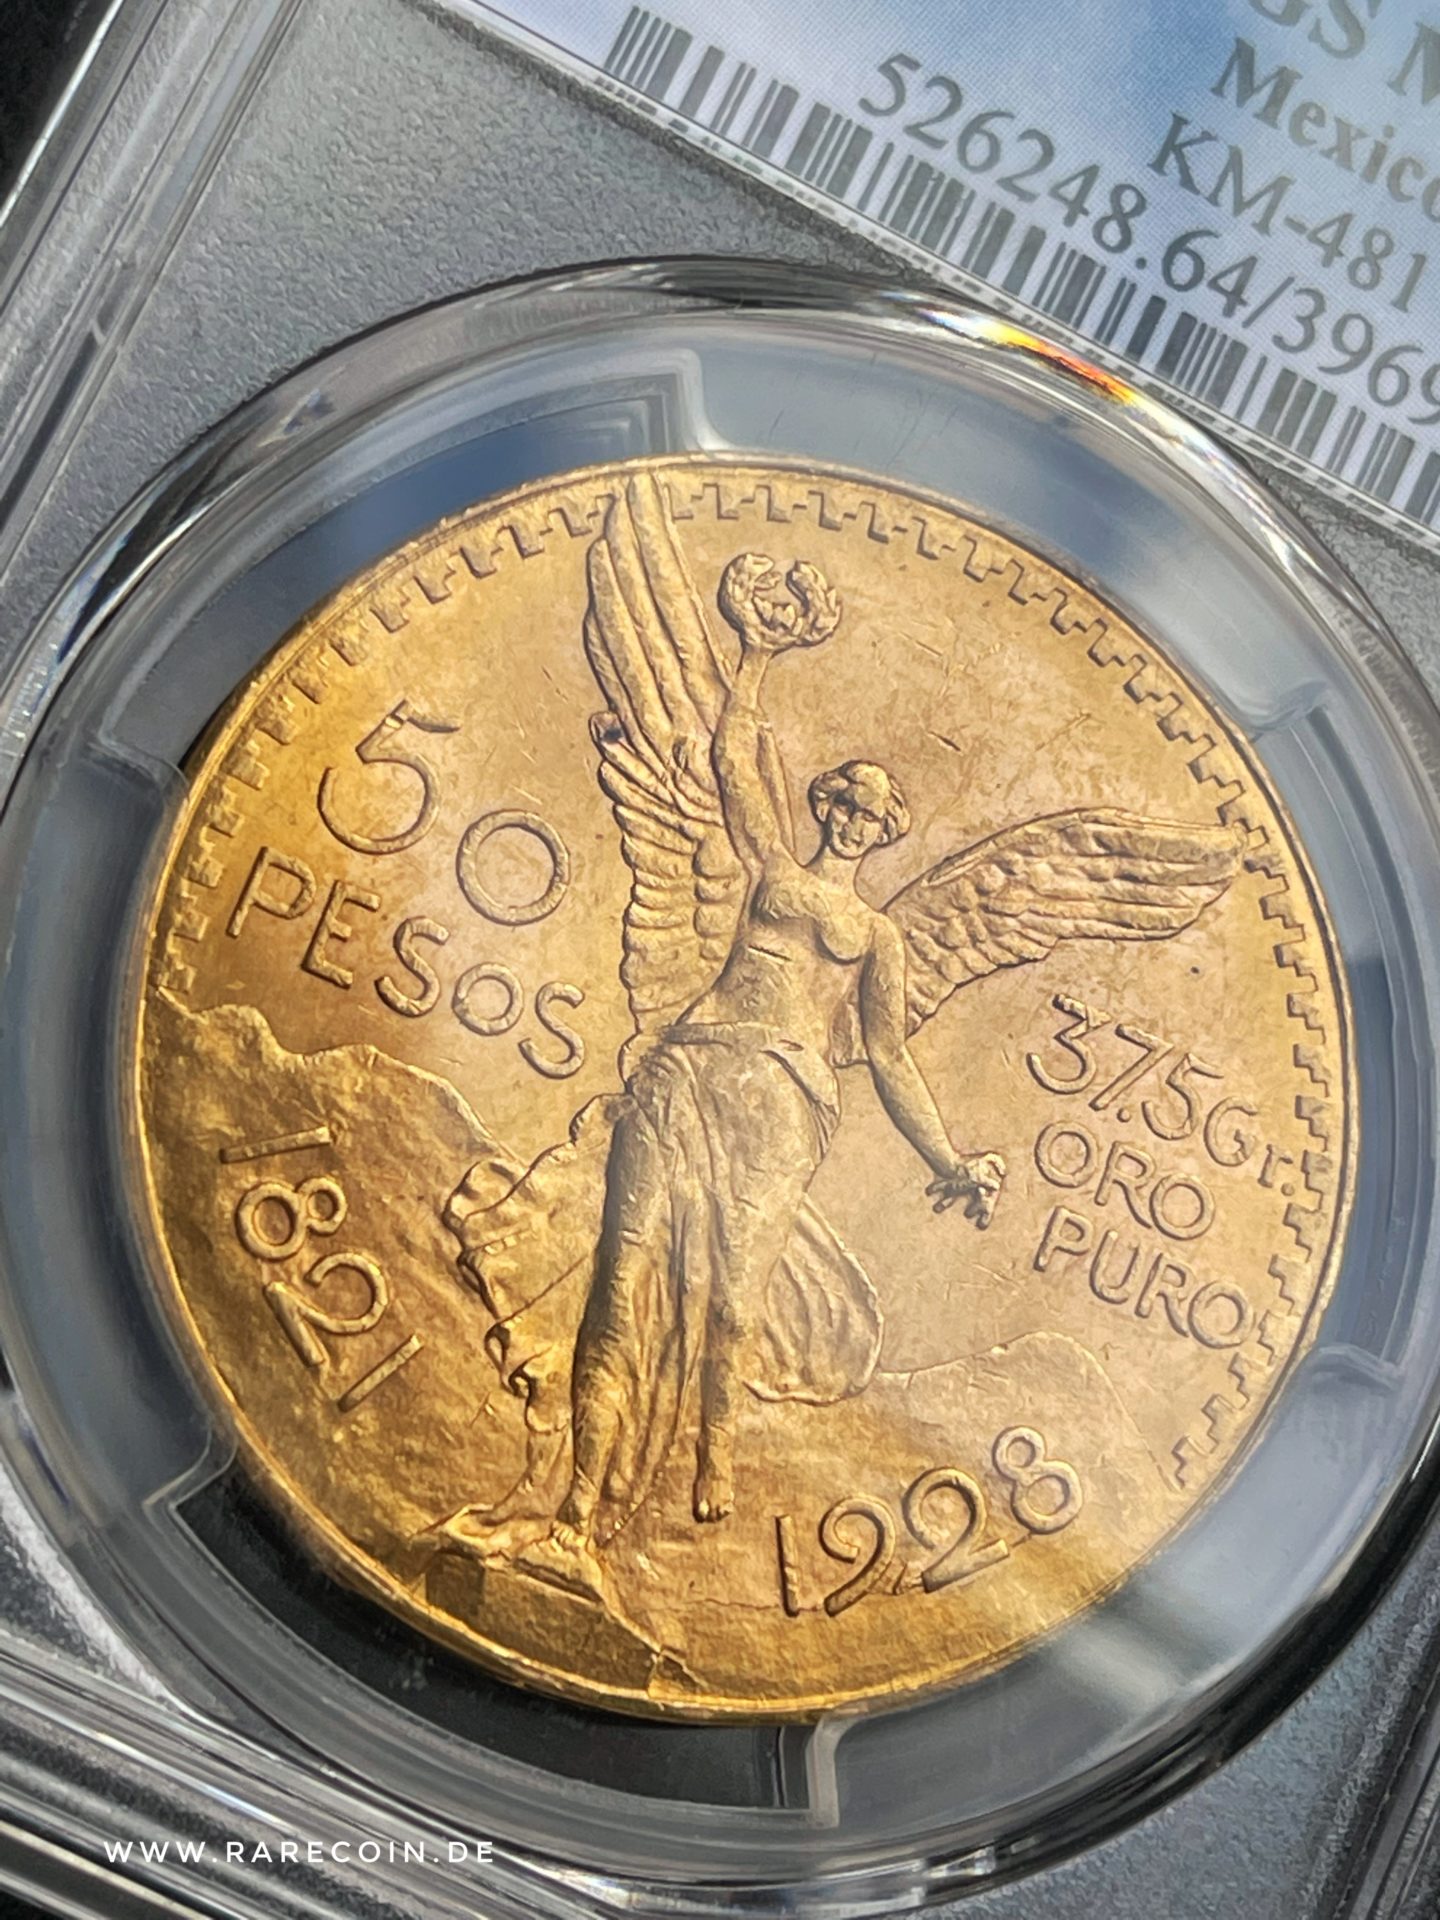 50 pesos 1928 centenario gold